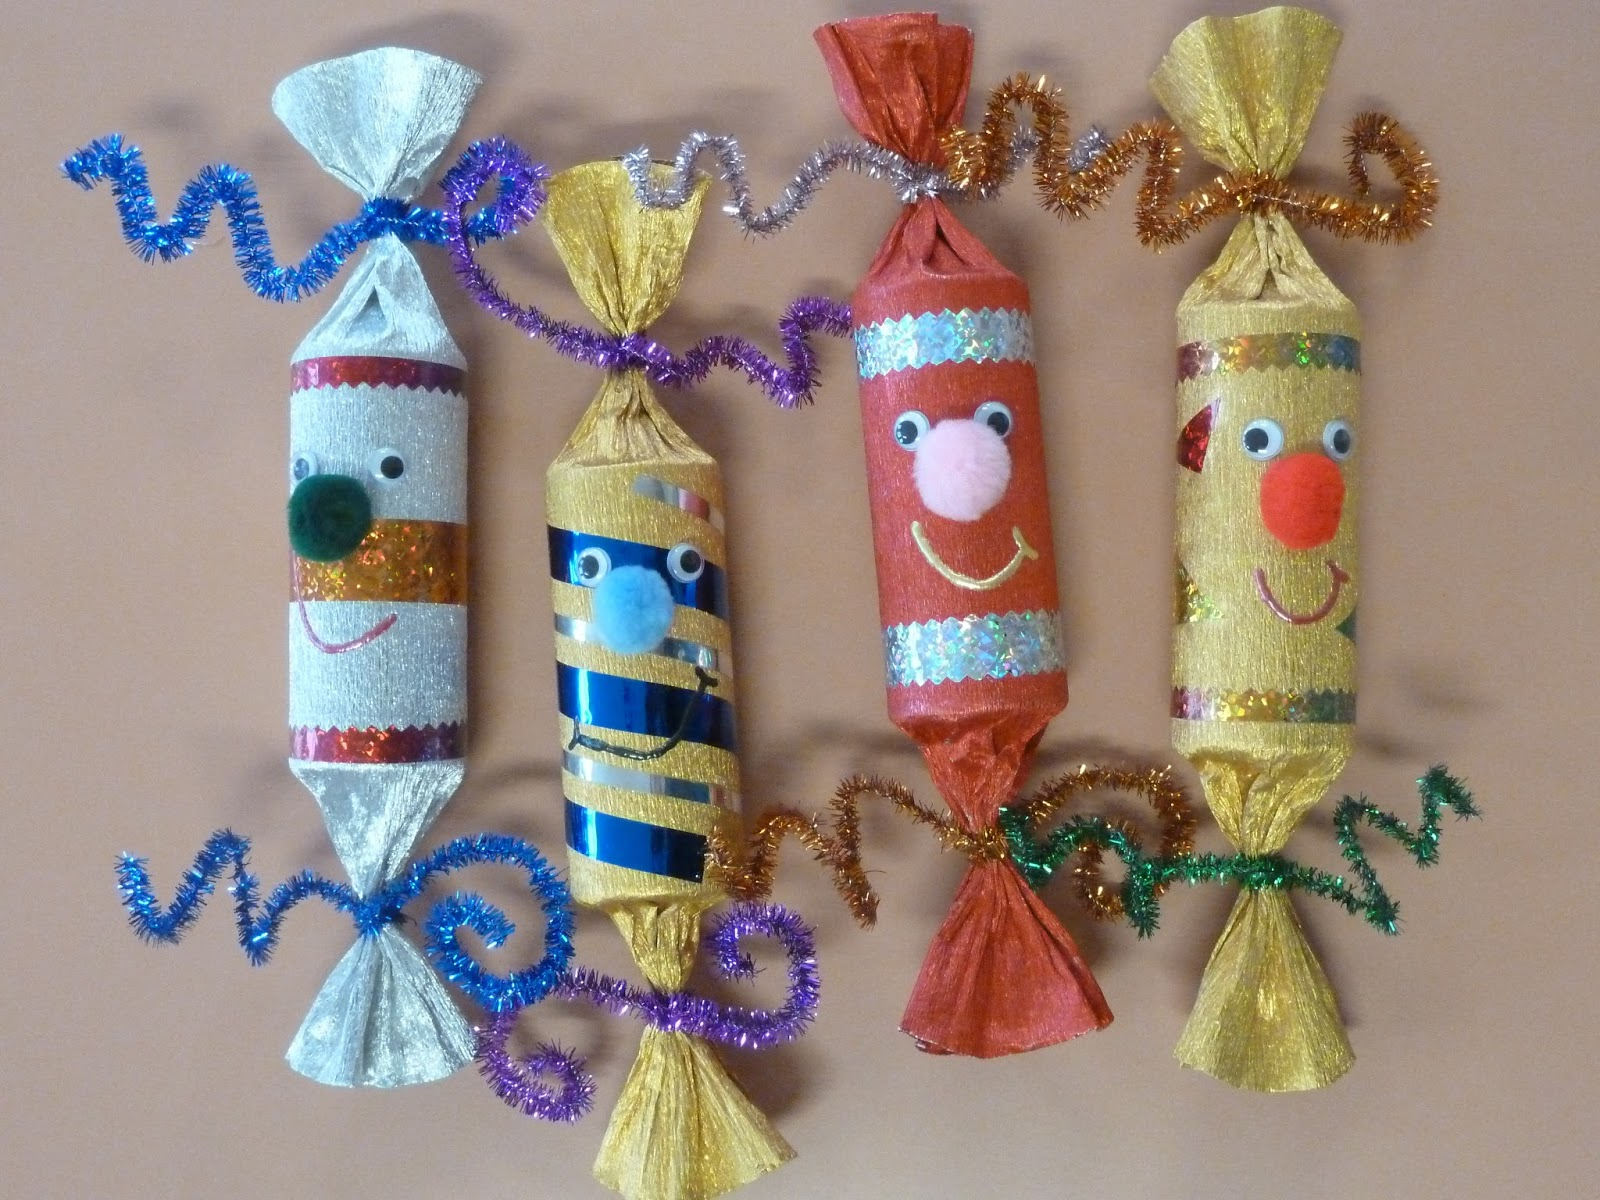 Amiscol: Les Friandises De Noël : Crackers Et Sucres D'Orge dedans Friandise Noel